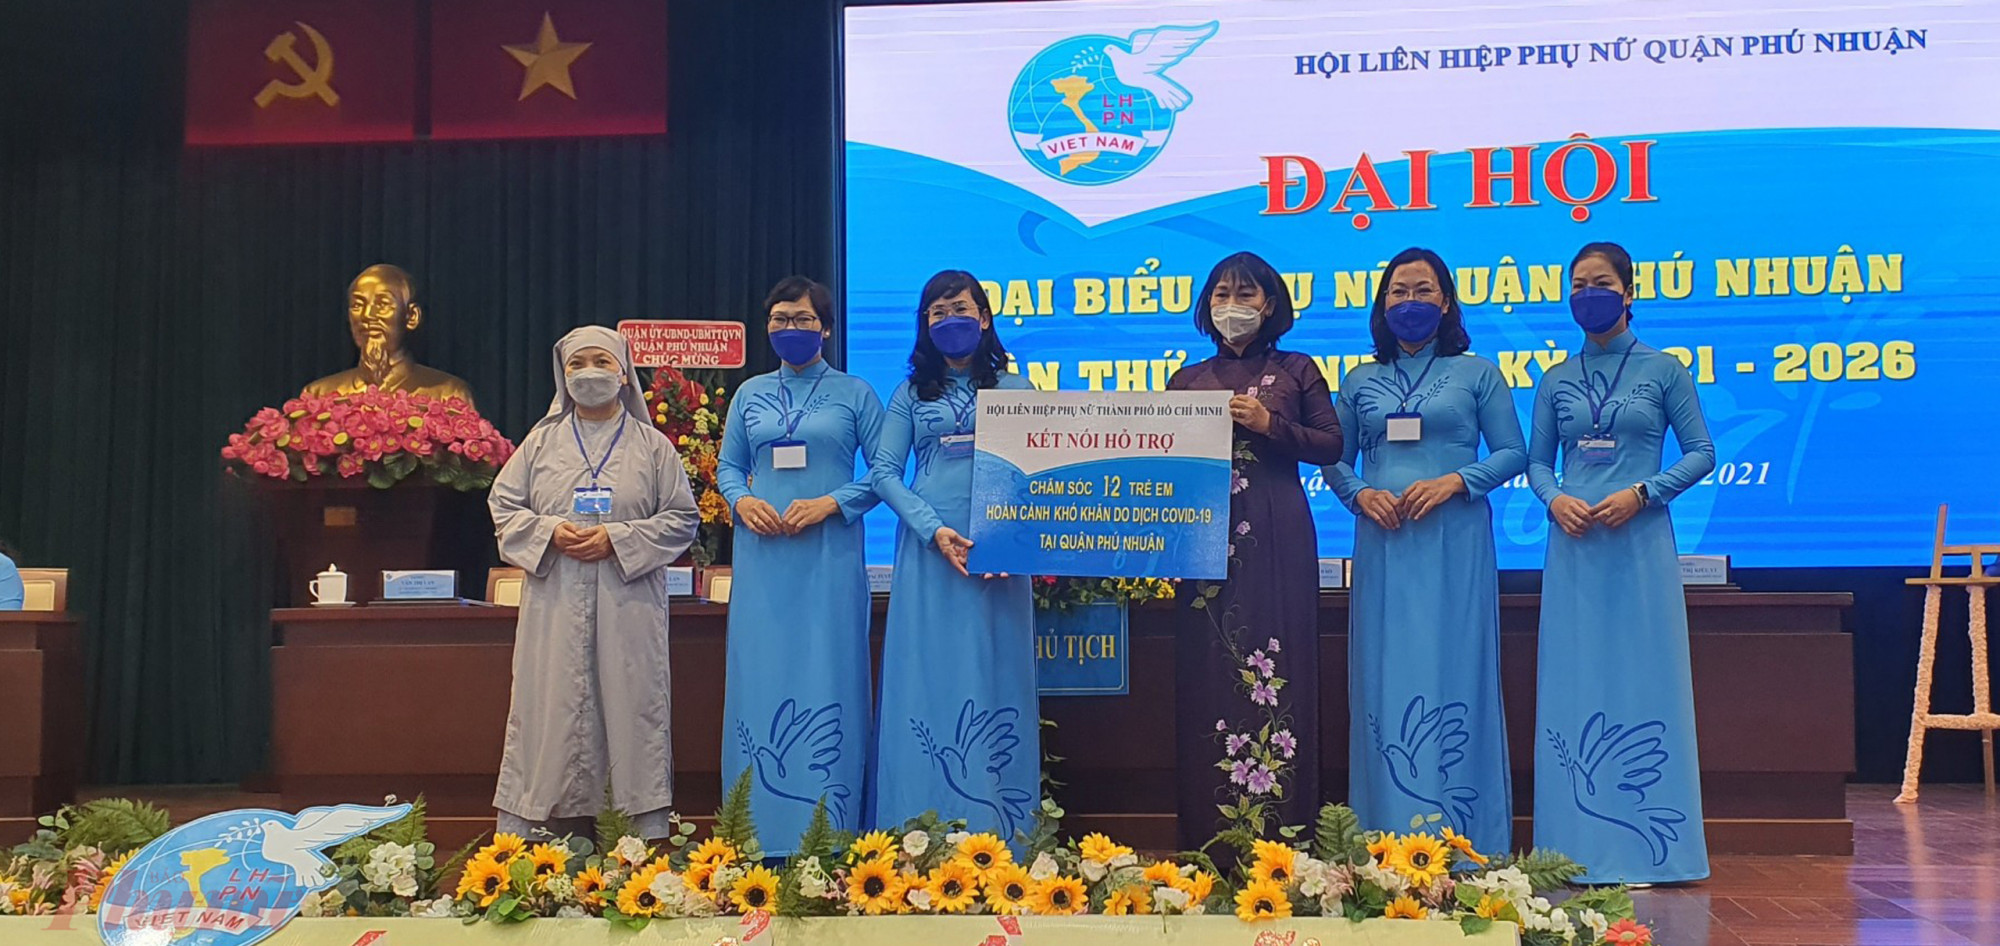 Dịp này, Hội LHPN TPHCM cũng tặng bảng tượng trưng “Kết nối hỗ trợ chăm sóc 12 trẻ em có hoàn cảnh khó khăn do dịch COVID-19 tại quận Phú Nhuận. 